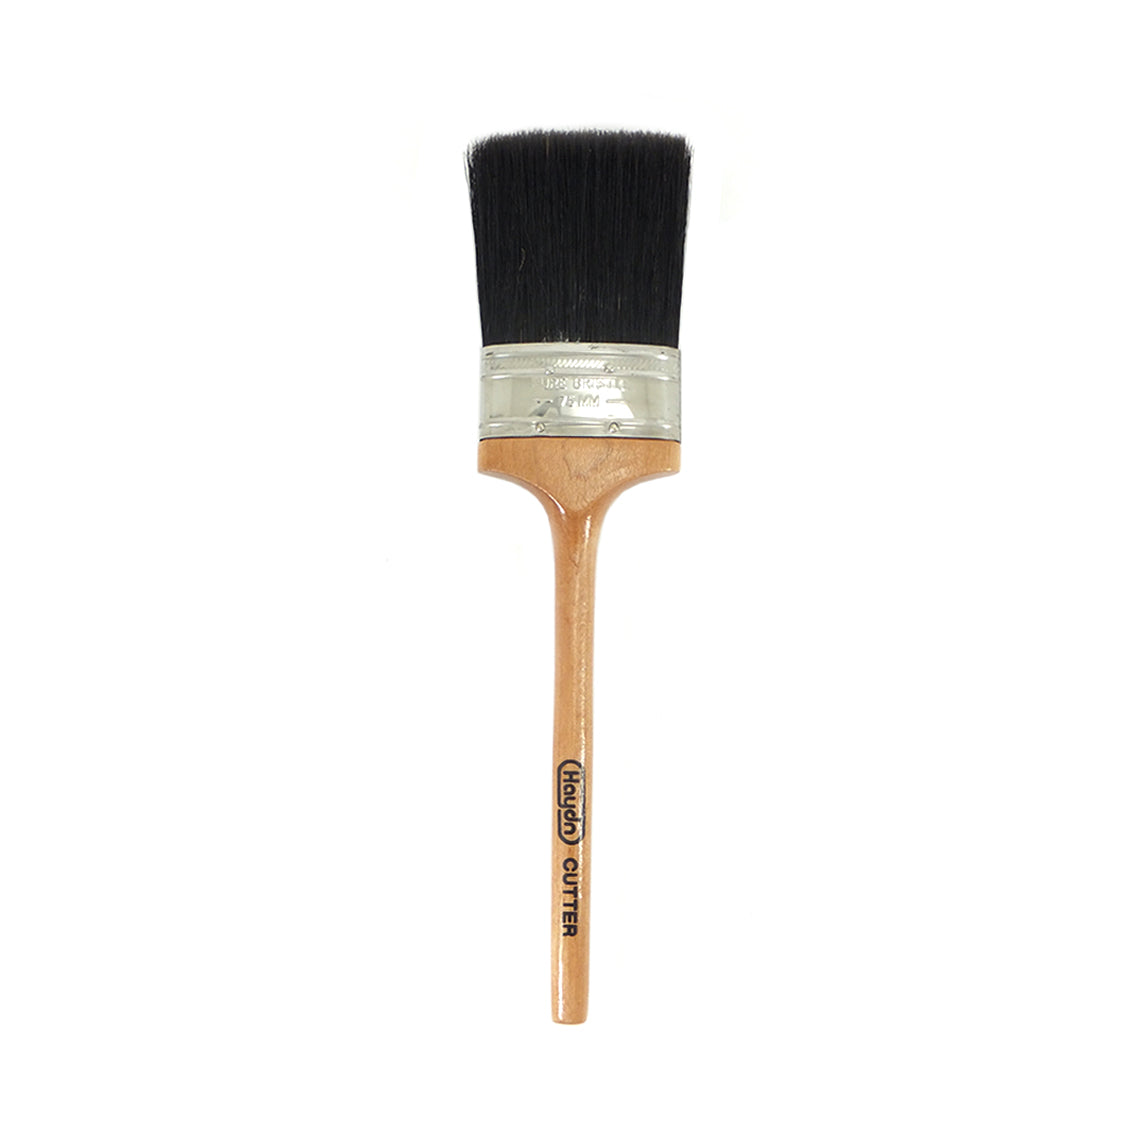 Premier Oval Paint Brush